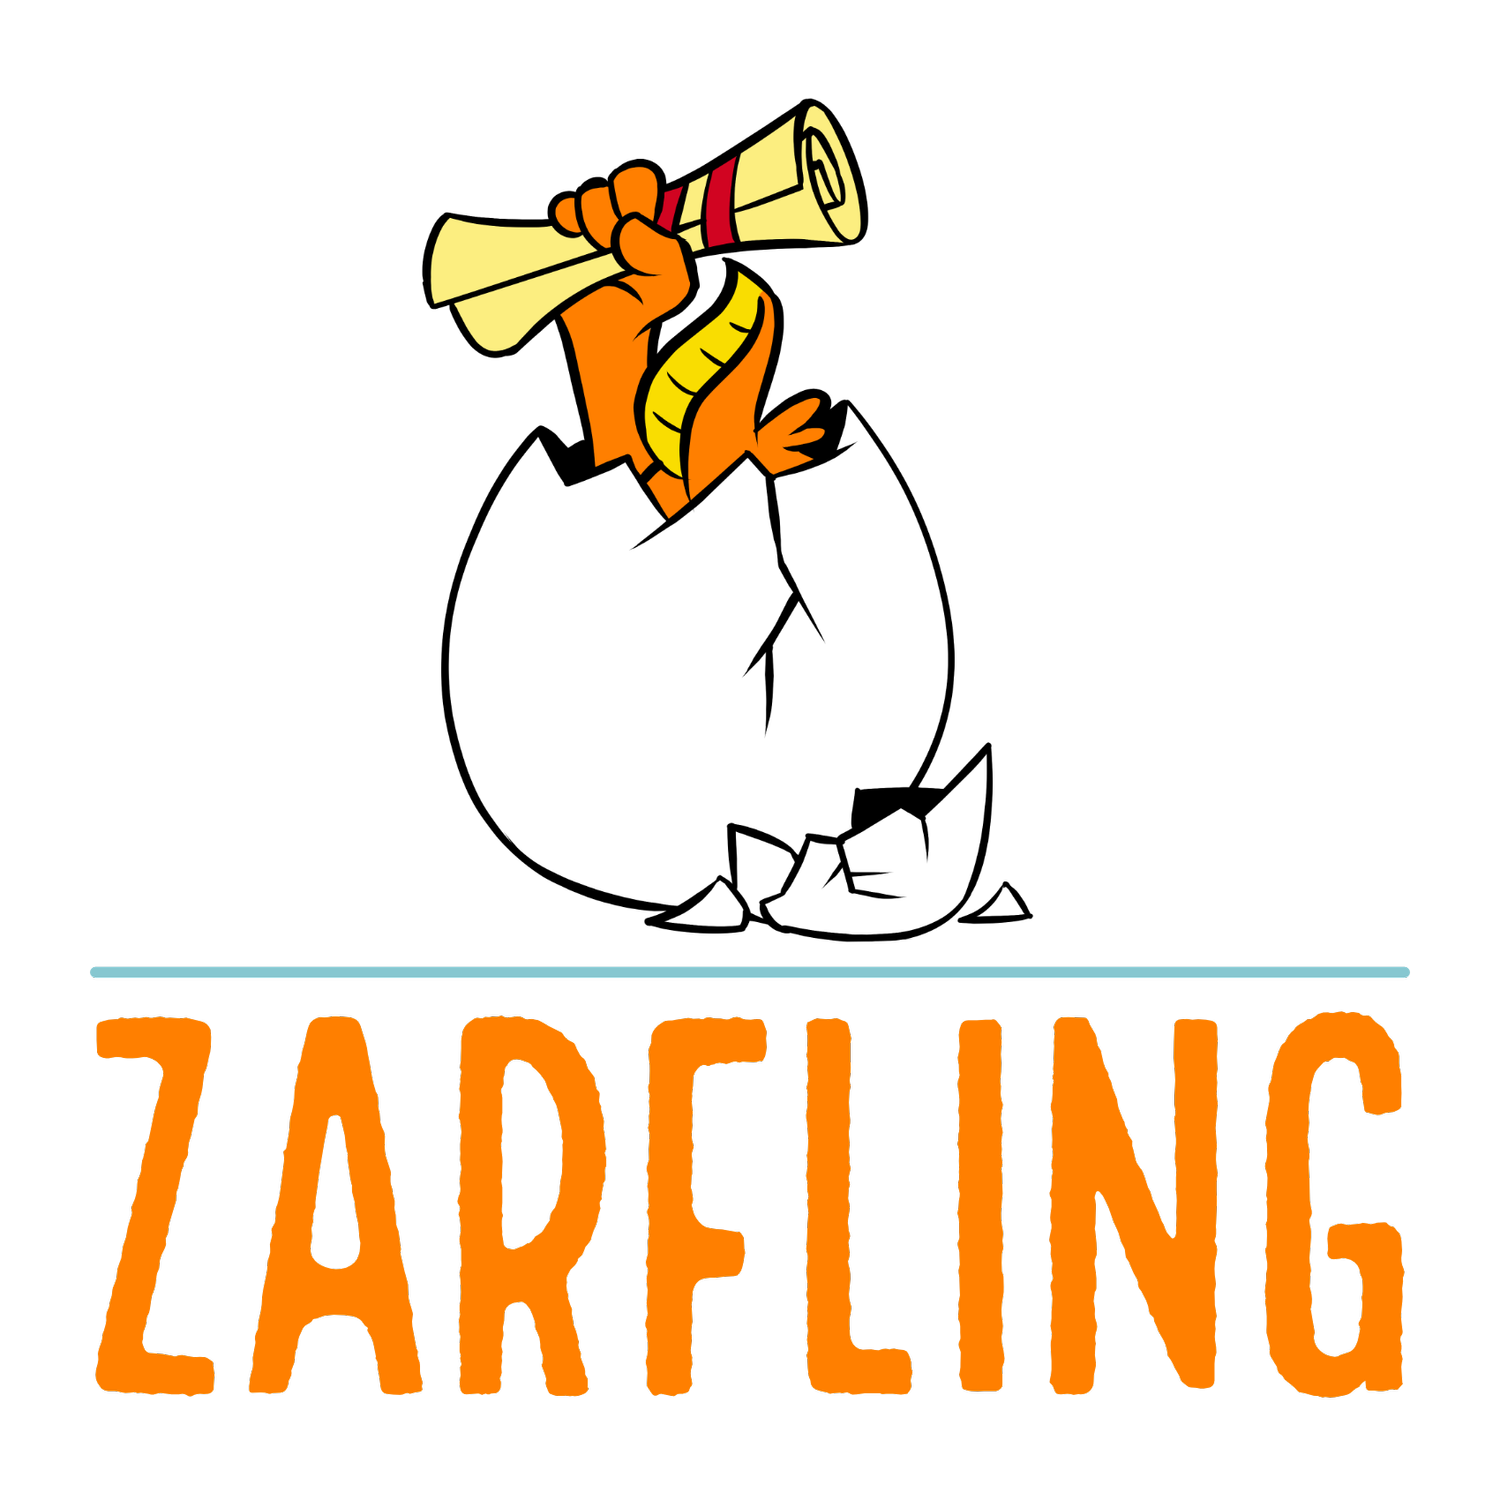 Zarfling